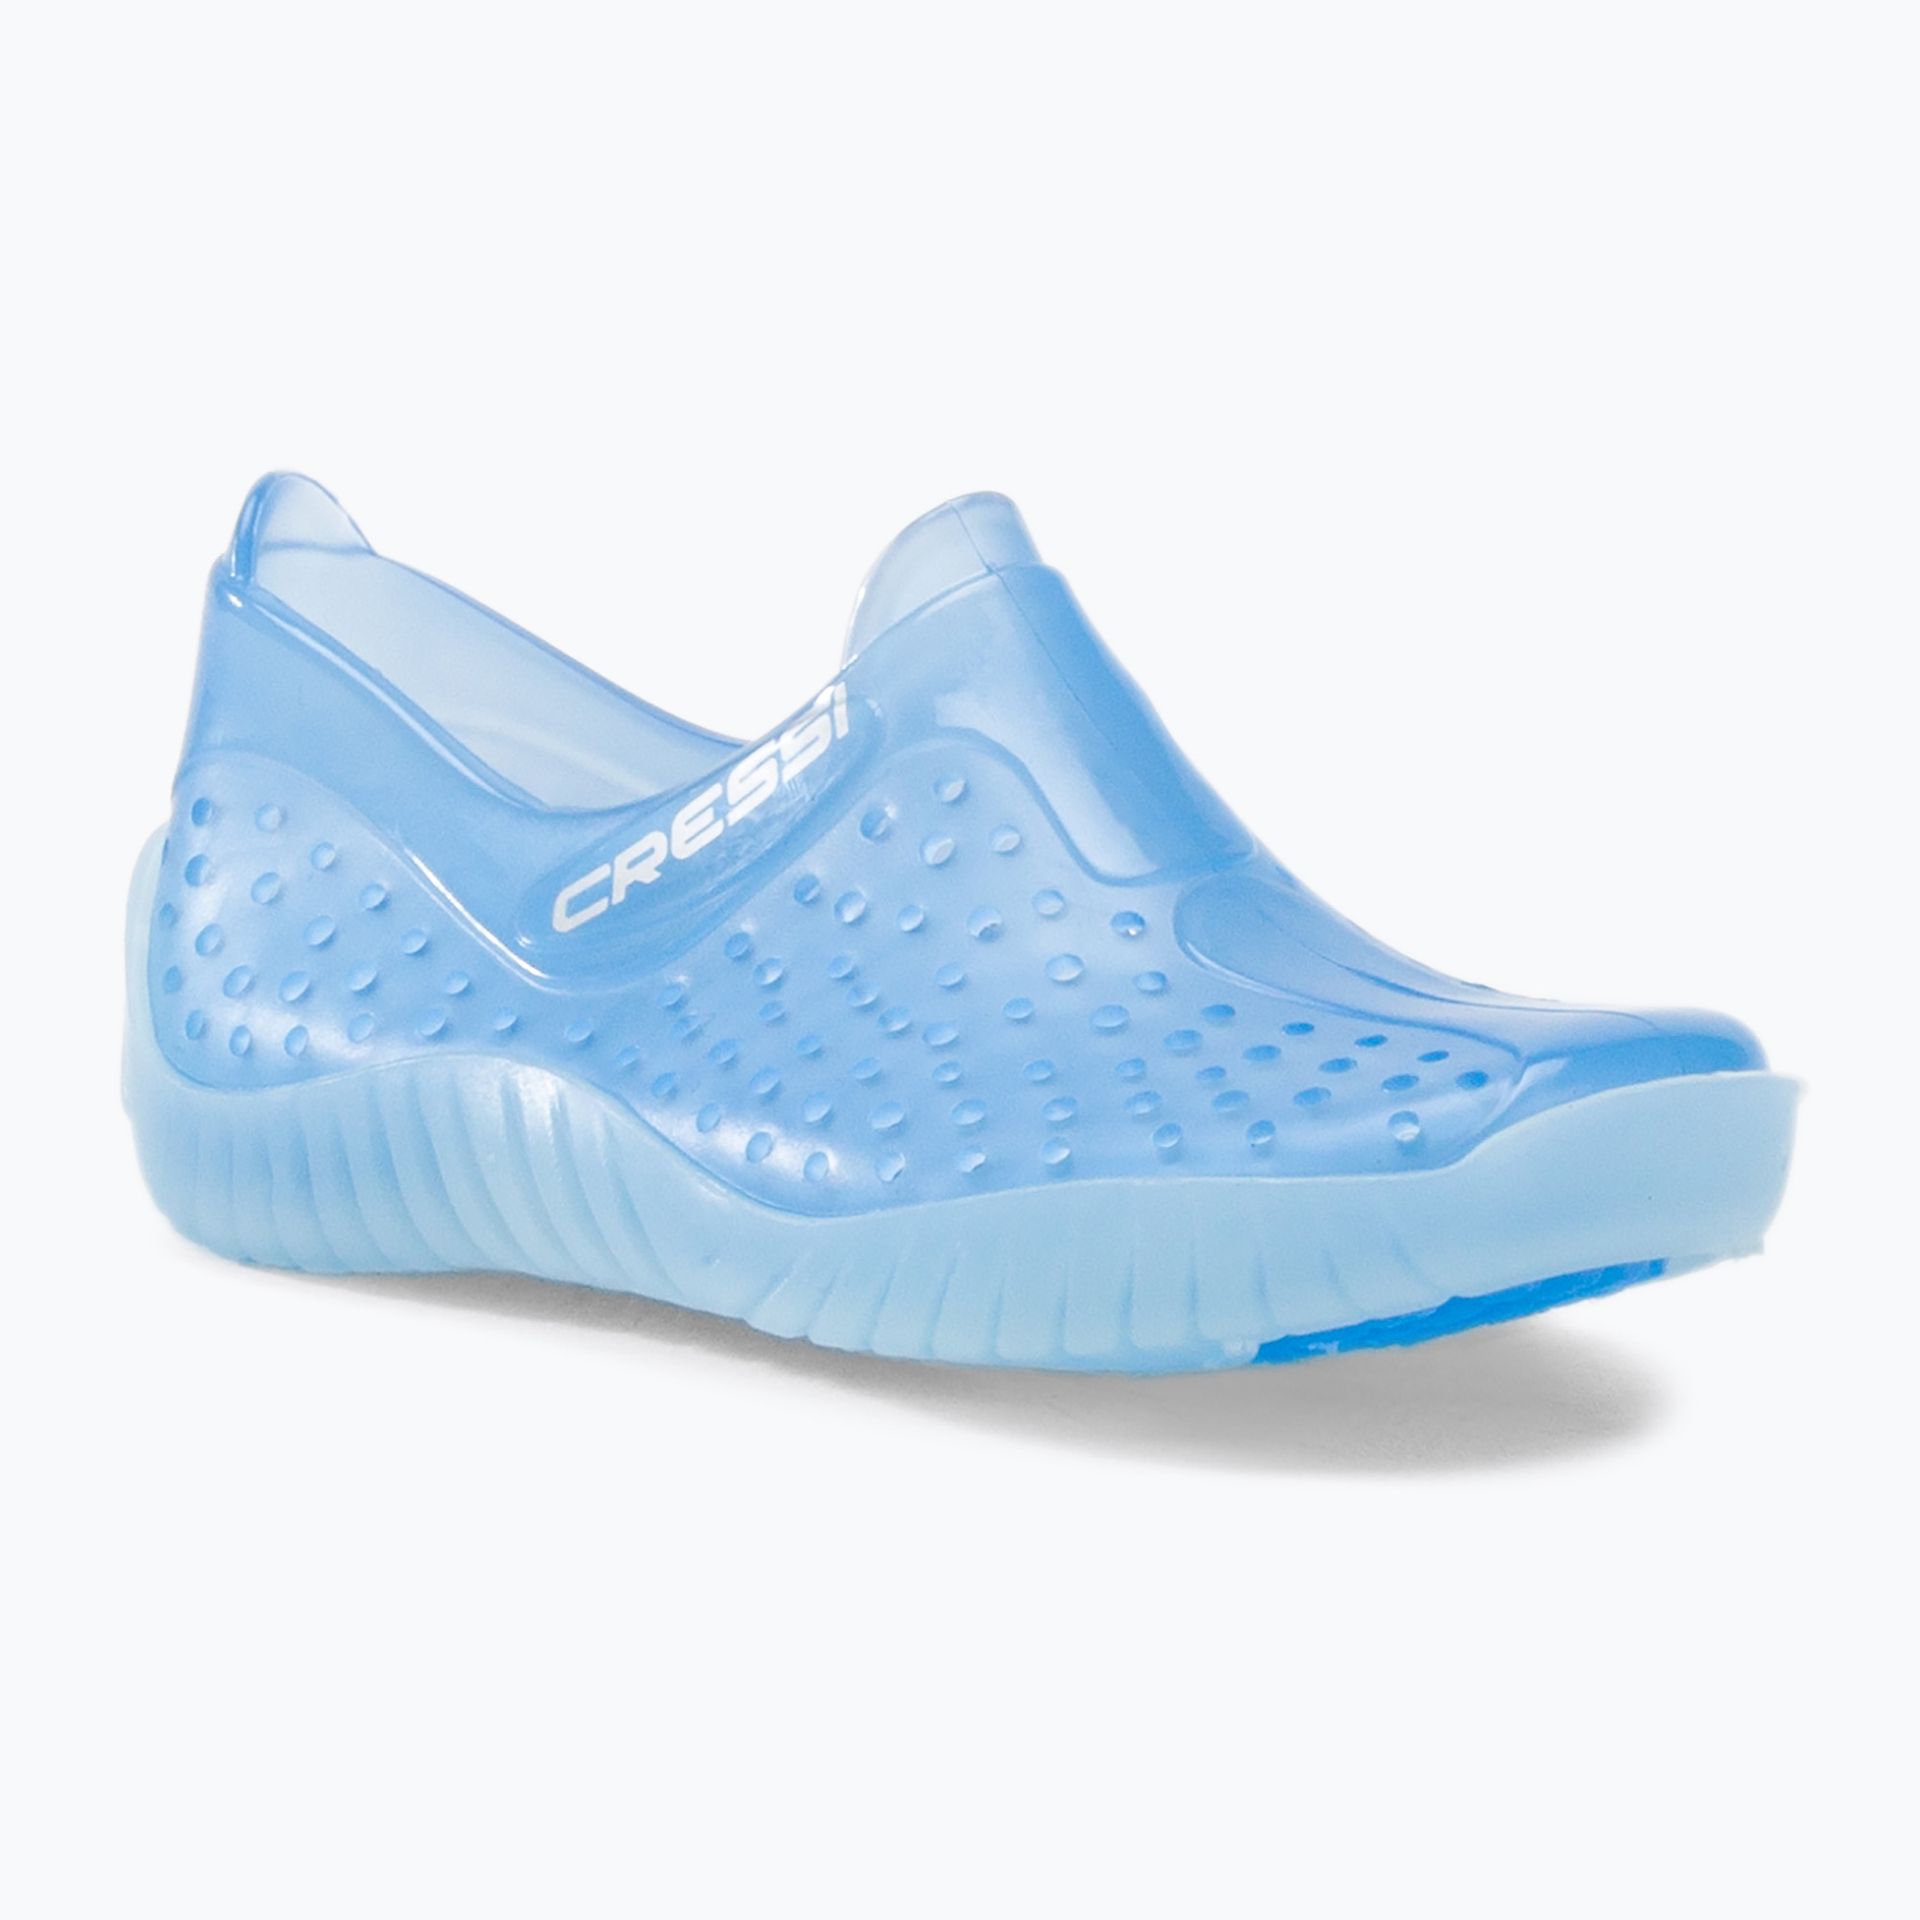 Cressi buty do wody, dostępne w rozmiarach dla dzieci i dorosłych, niebieski VB950027